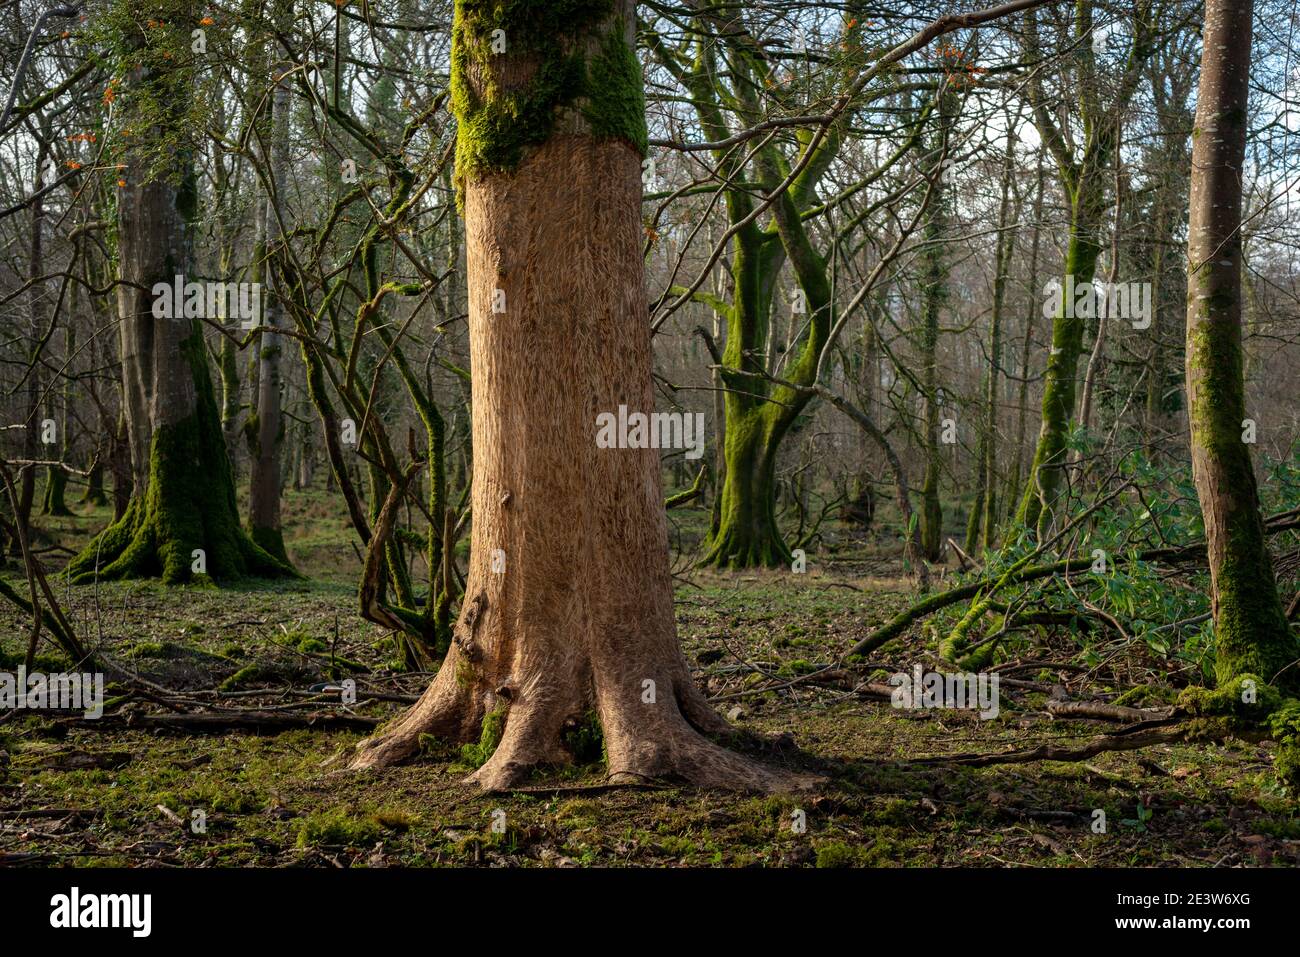 Écorces d'arbres abîmées et raclées par des cerfs dans le parc national de Killarney, comté de Kerry, Irlande. Concepts environnementaux du tronc d'arbre endommagé par le cerf. Banque D'Images